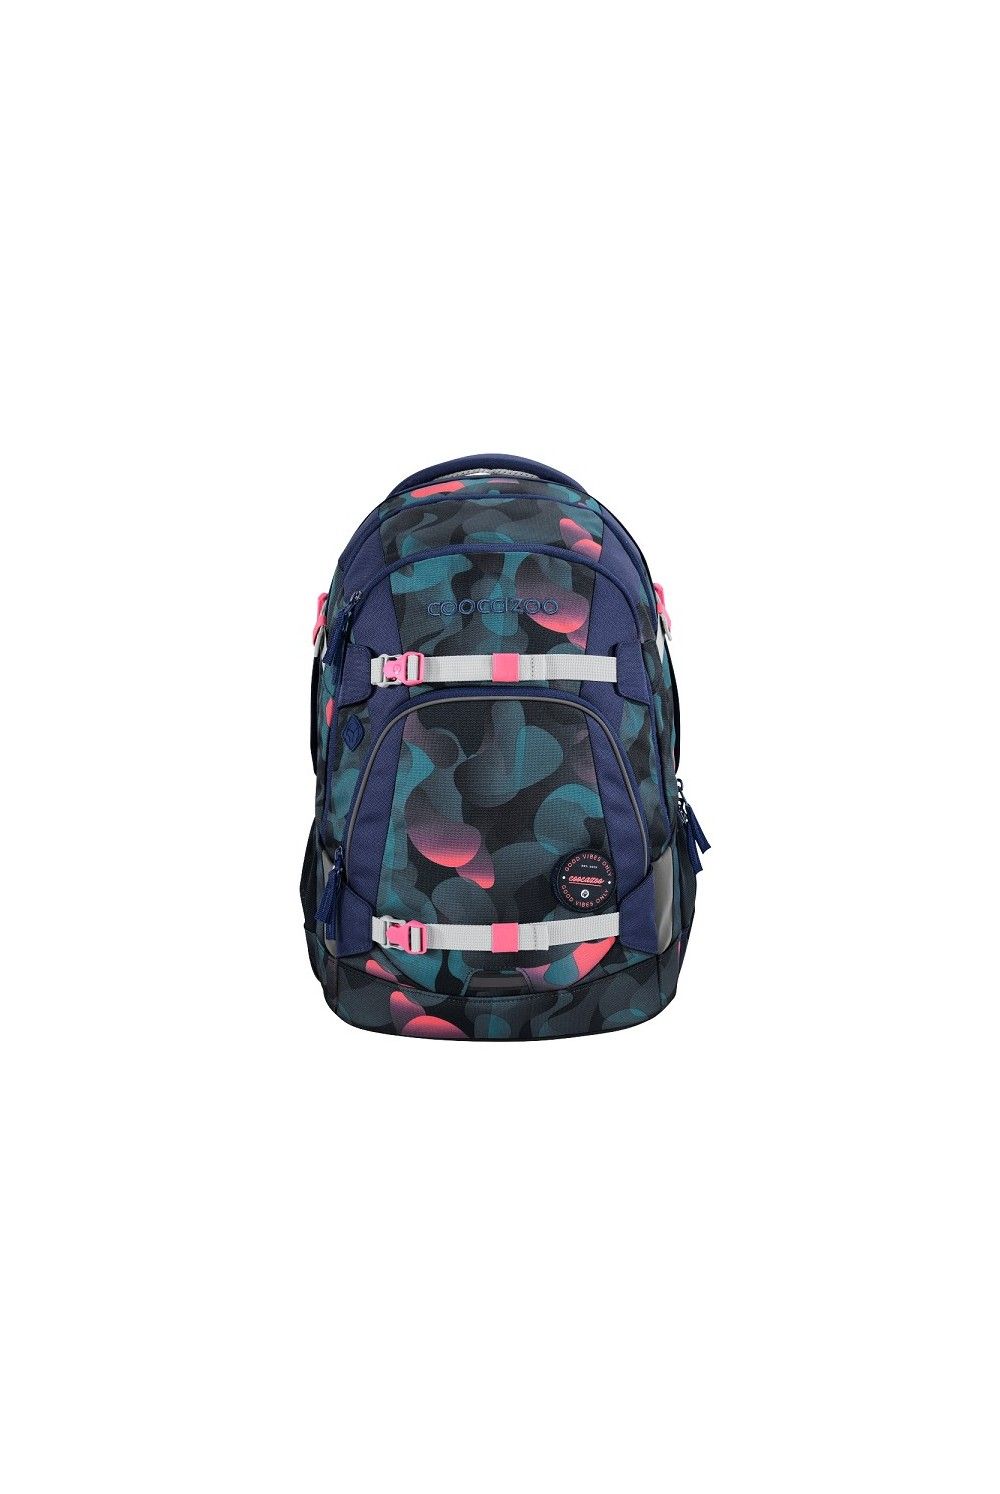 School backpack Coocazoo MATE Cloudy Peach